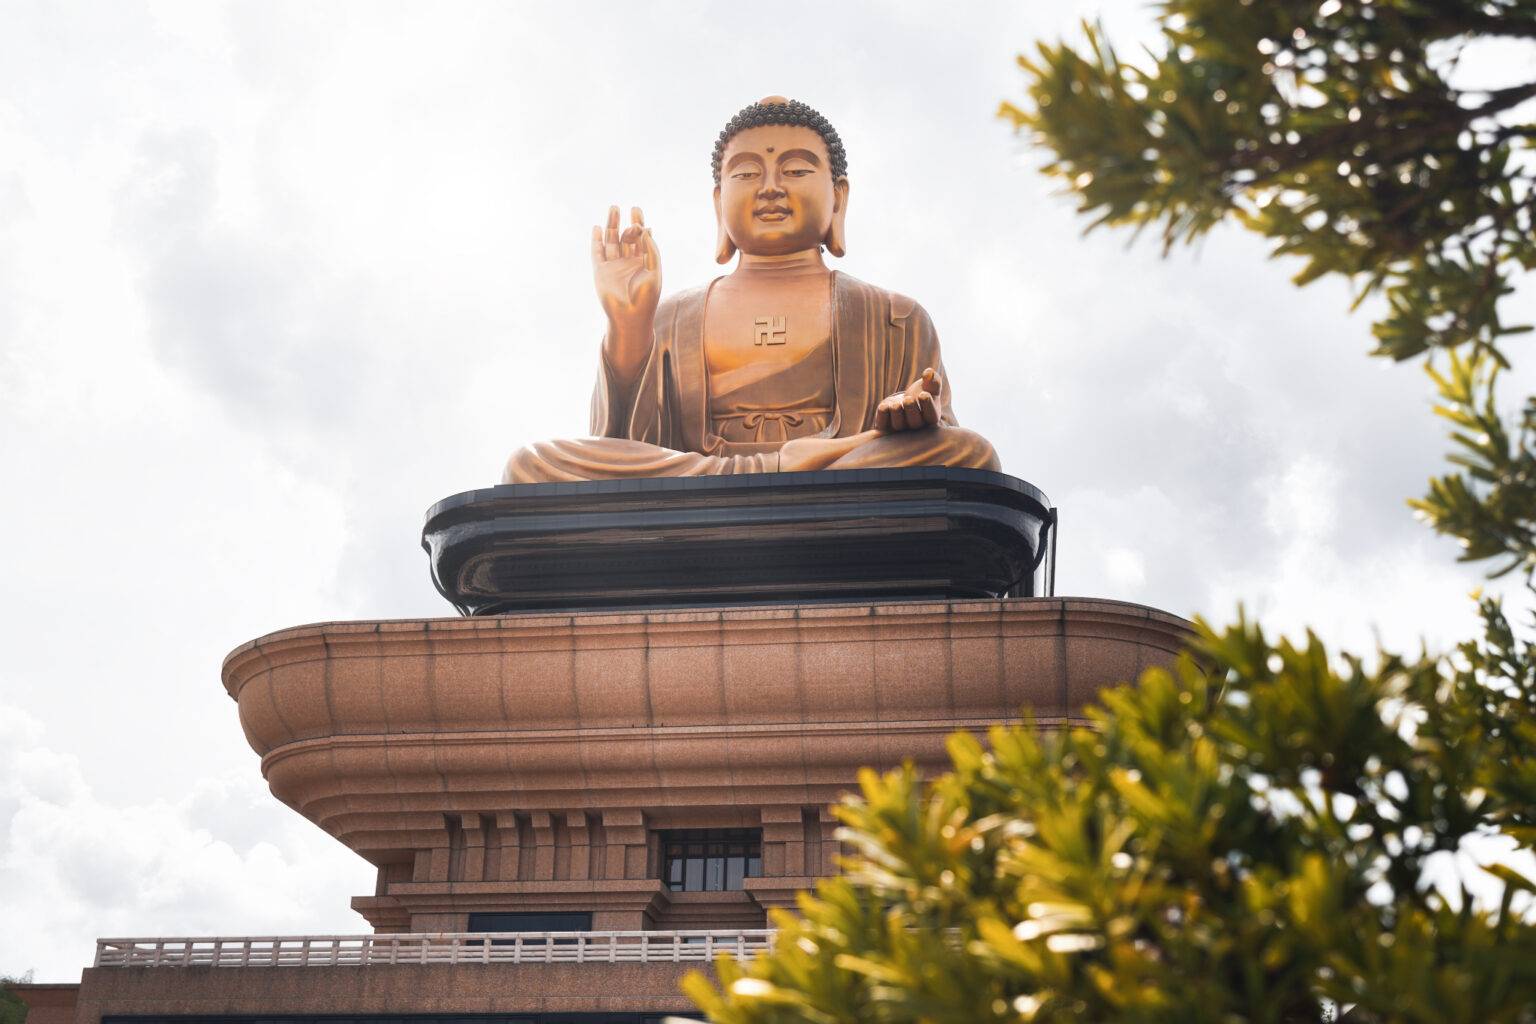 Beeindruckend: In Fo Guang Shan lässt sich die größte sitzende Buddha-Statue der Welt bestaunen.